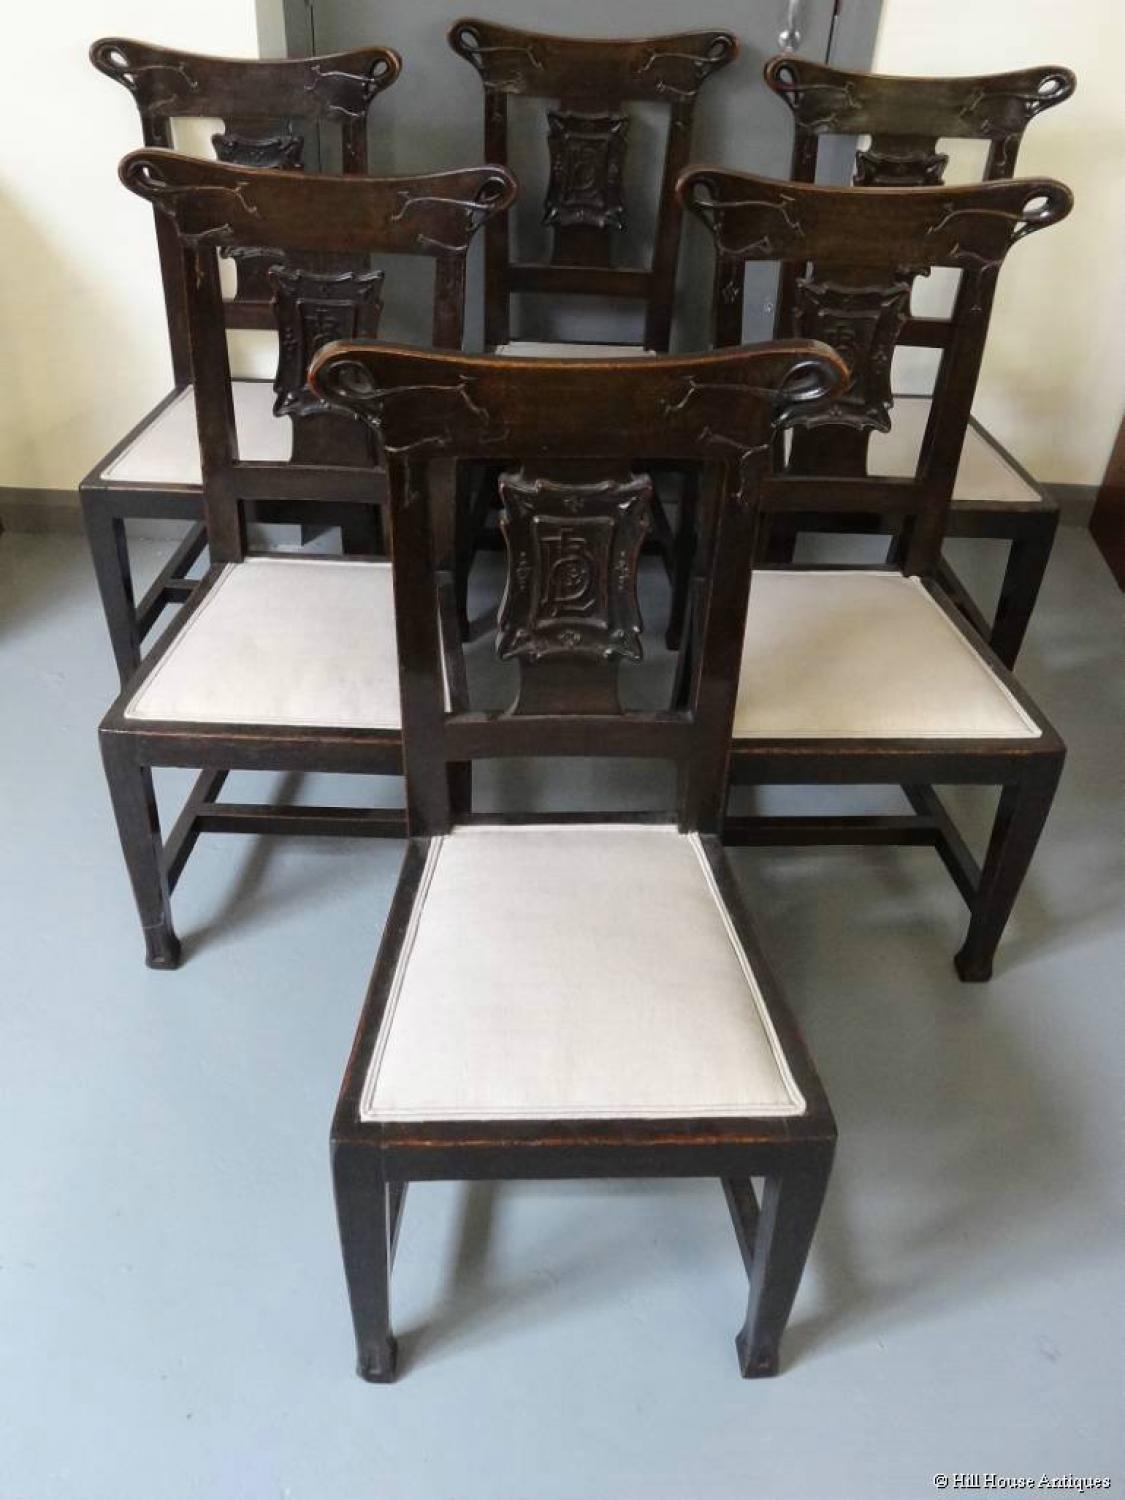 Rare British Linen Bank Glasgow Style Art Nouveau 6 chairs